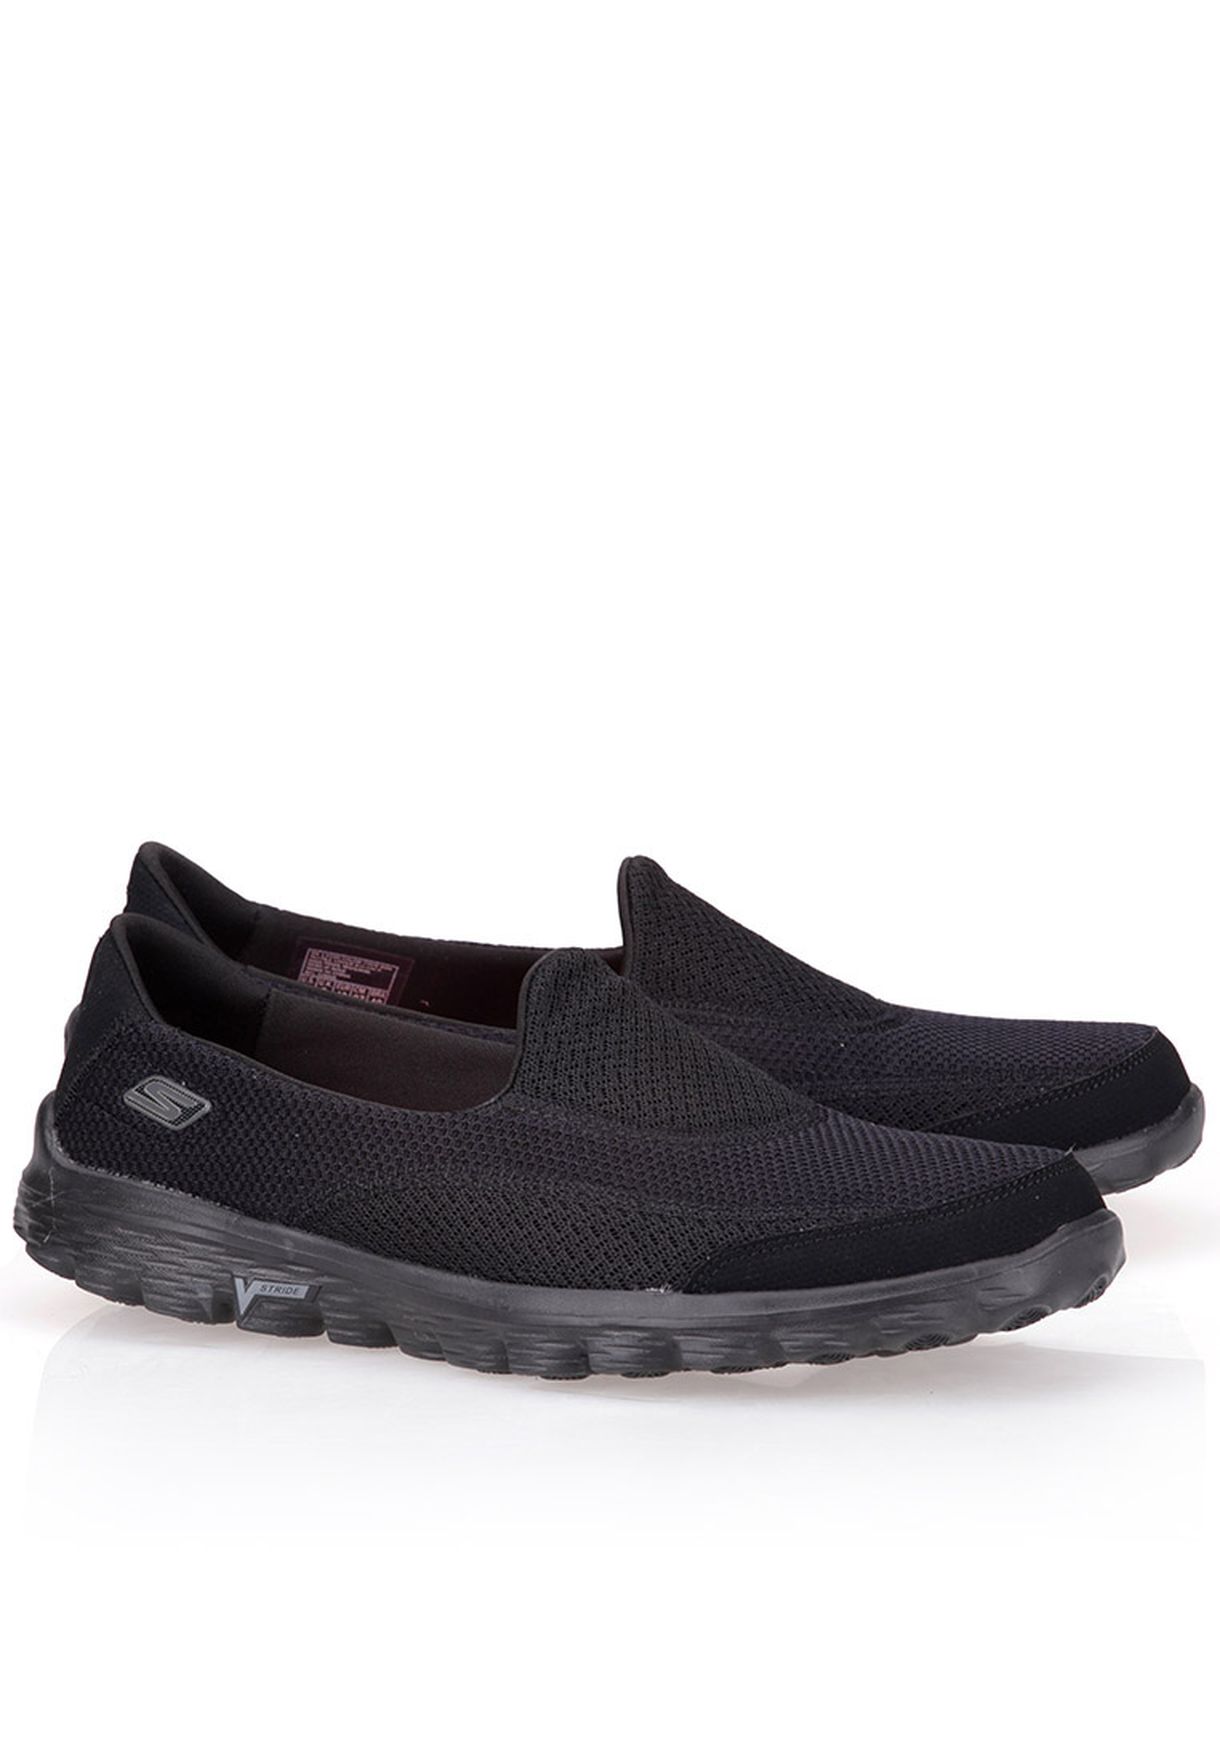 Skechers black Go Walk 2 Comfort Shoes 